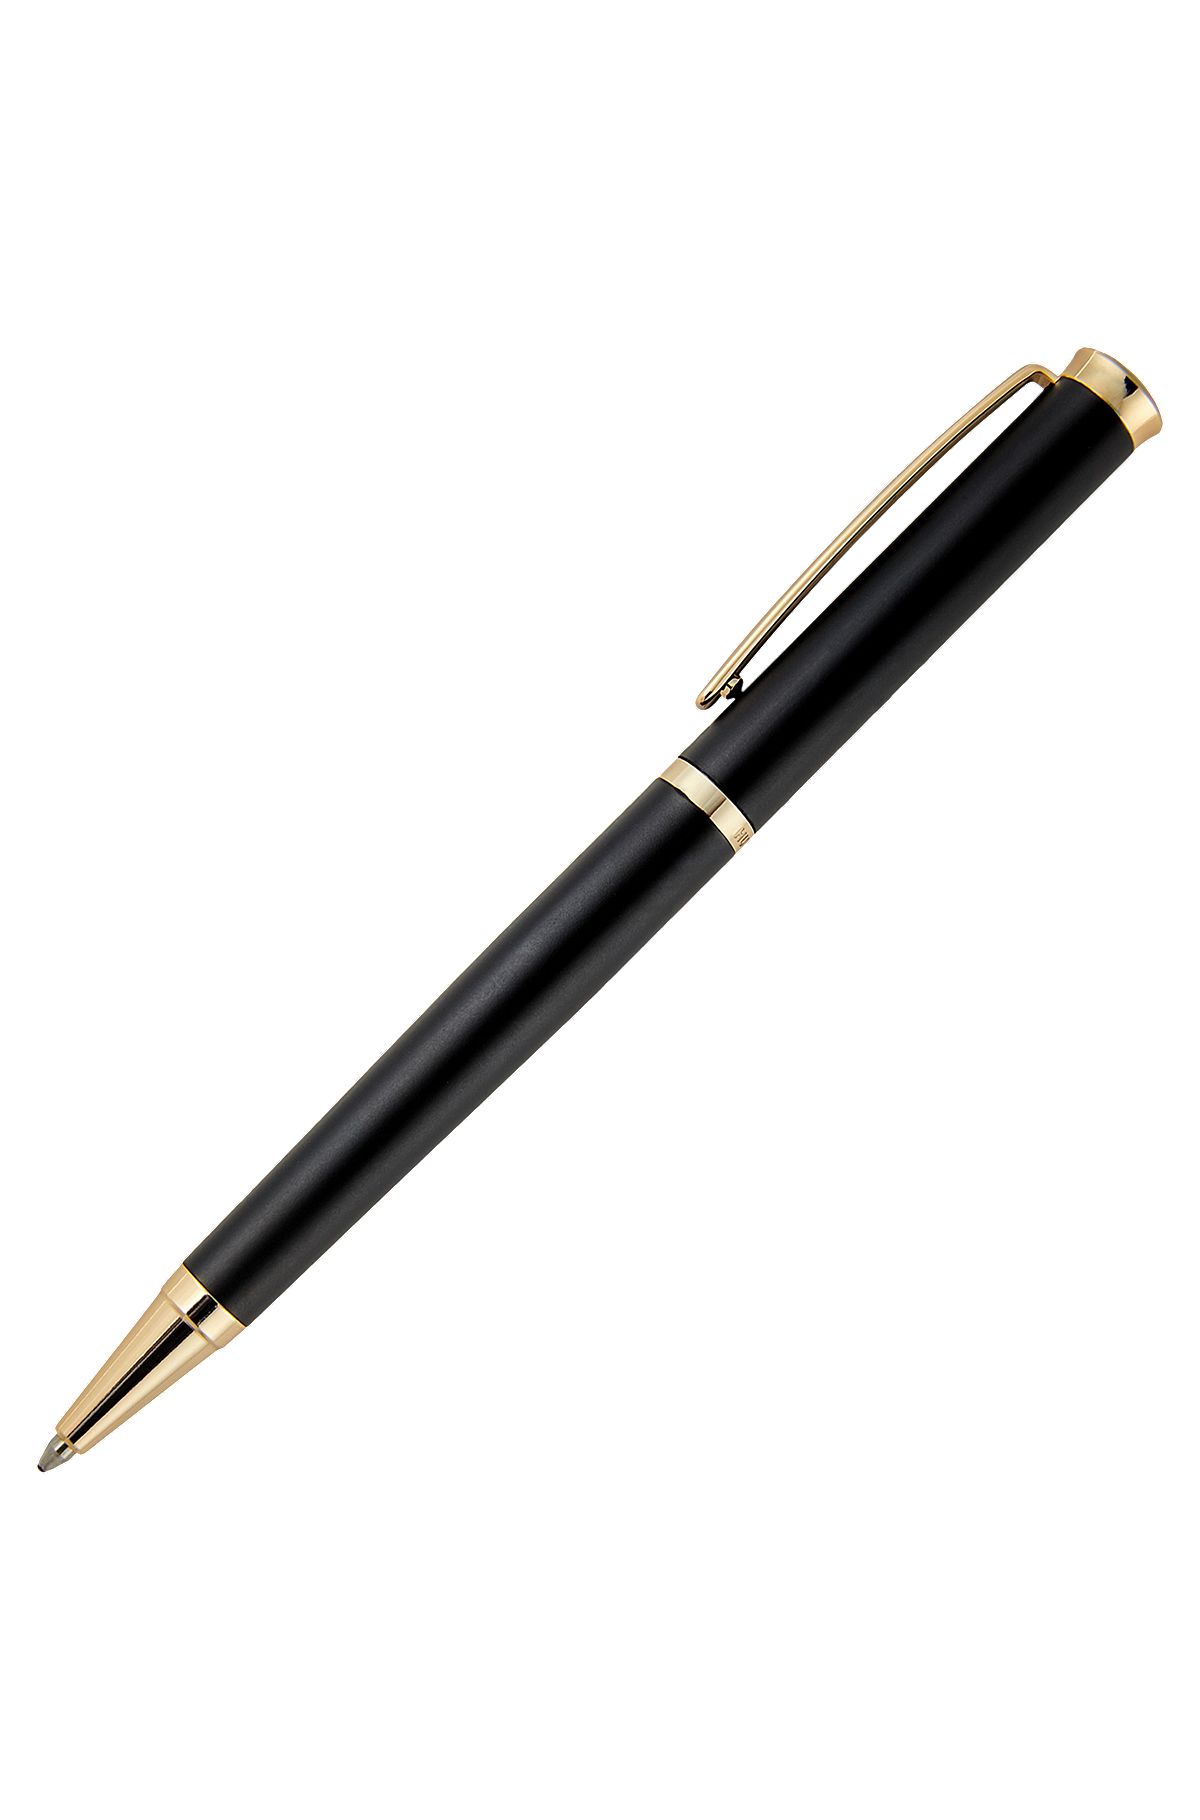 Mattschwarzer Kugelschreiber mit goldfarbenen Akzenten, Schwarz